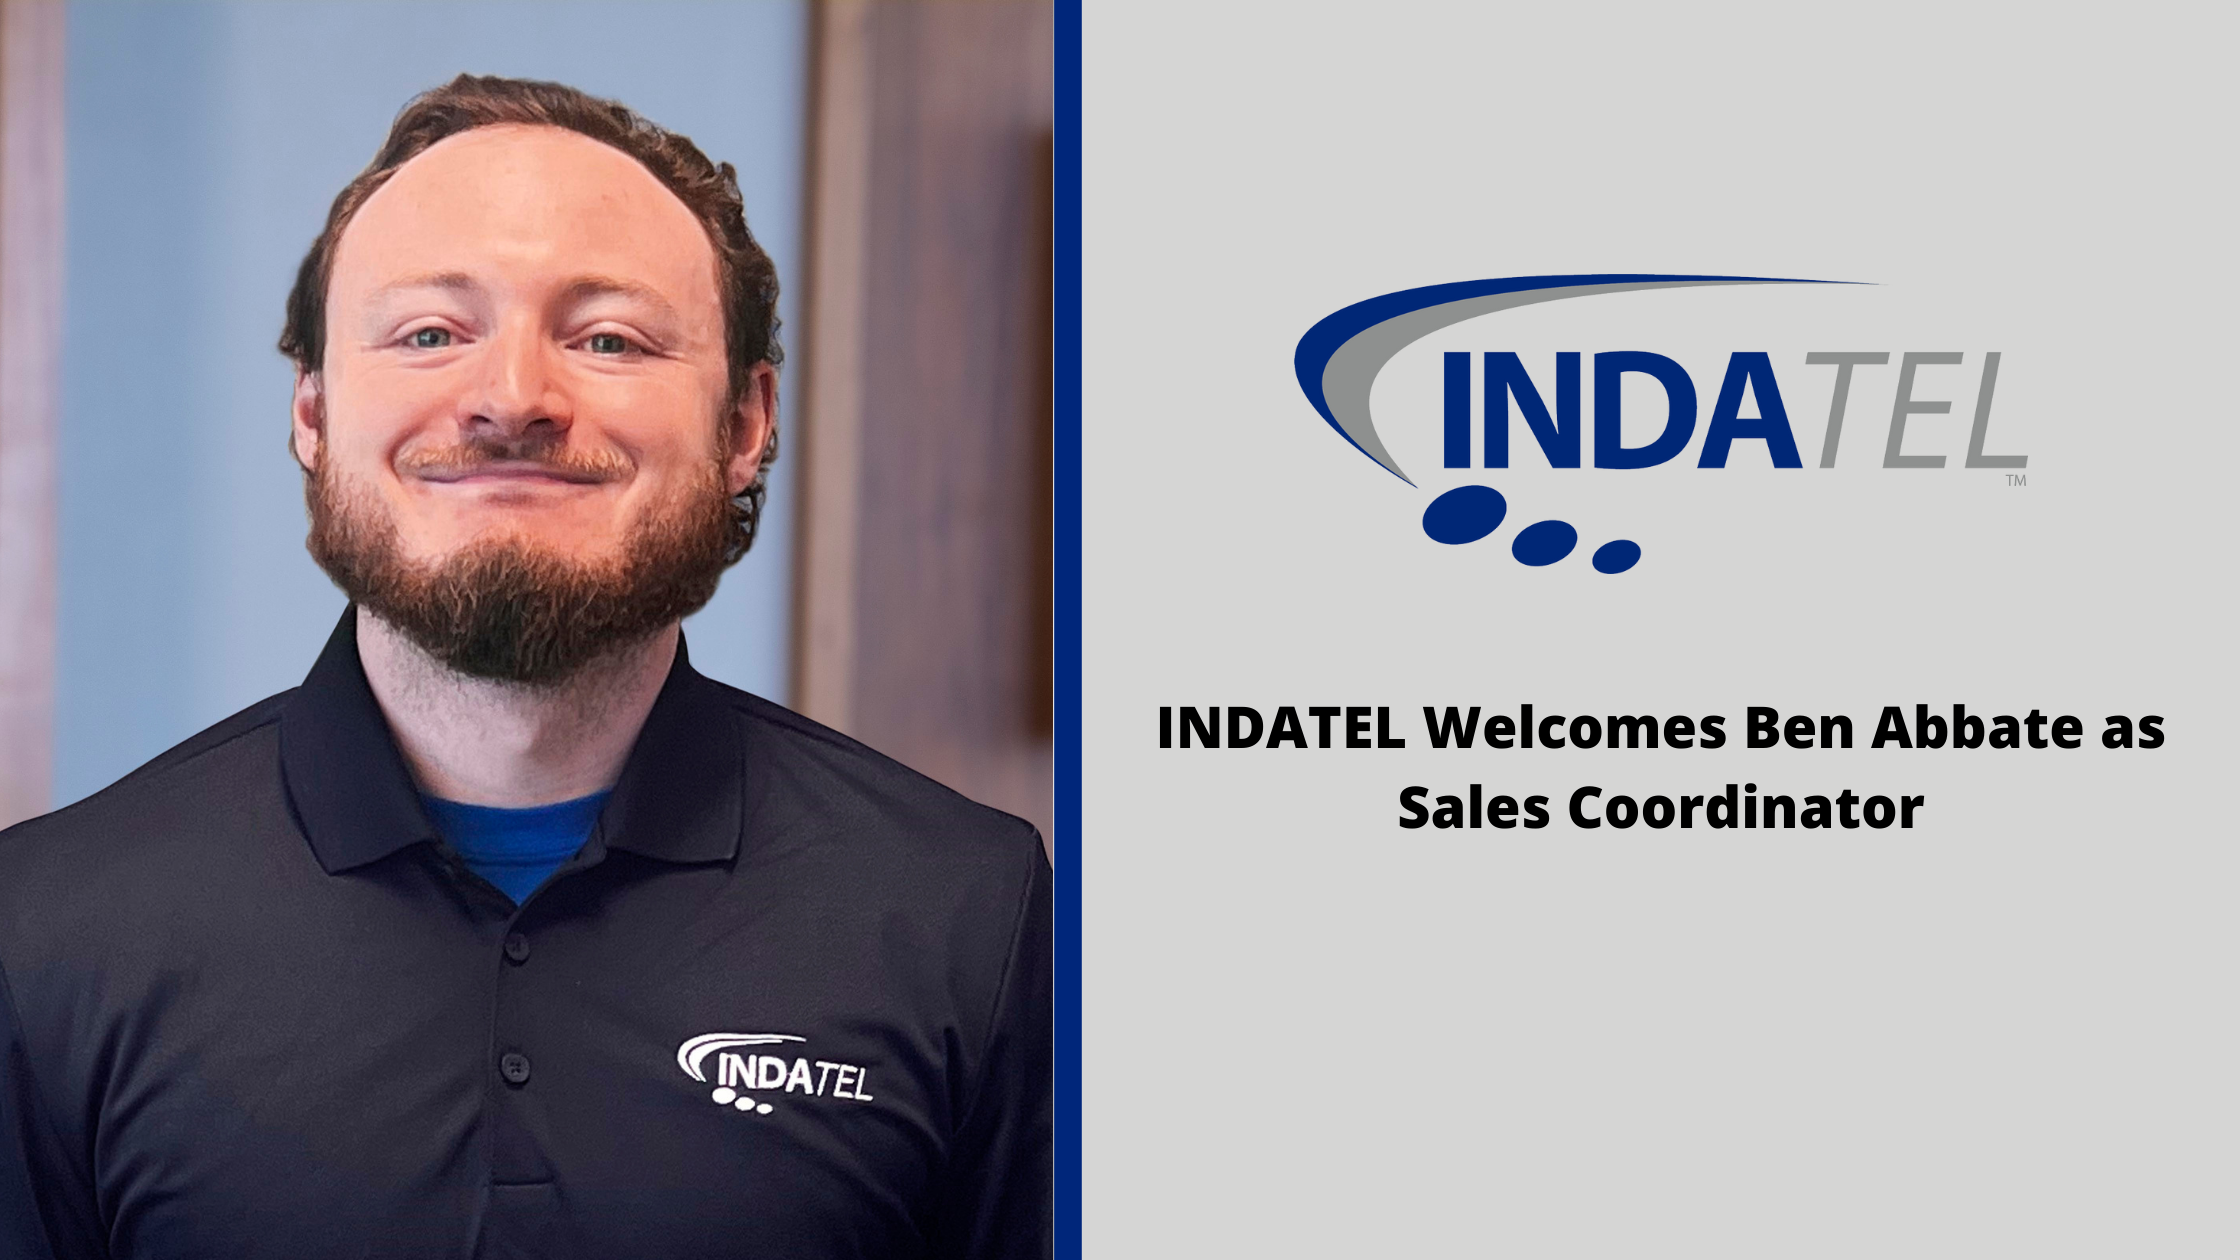 INDATEL Welcomes Ben Abbate as Sales Coordinator image